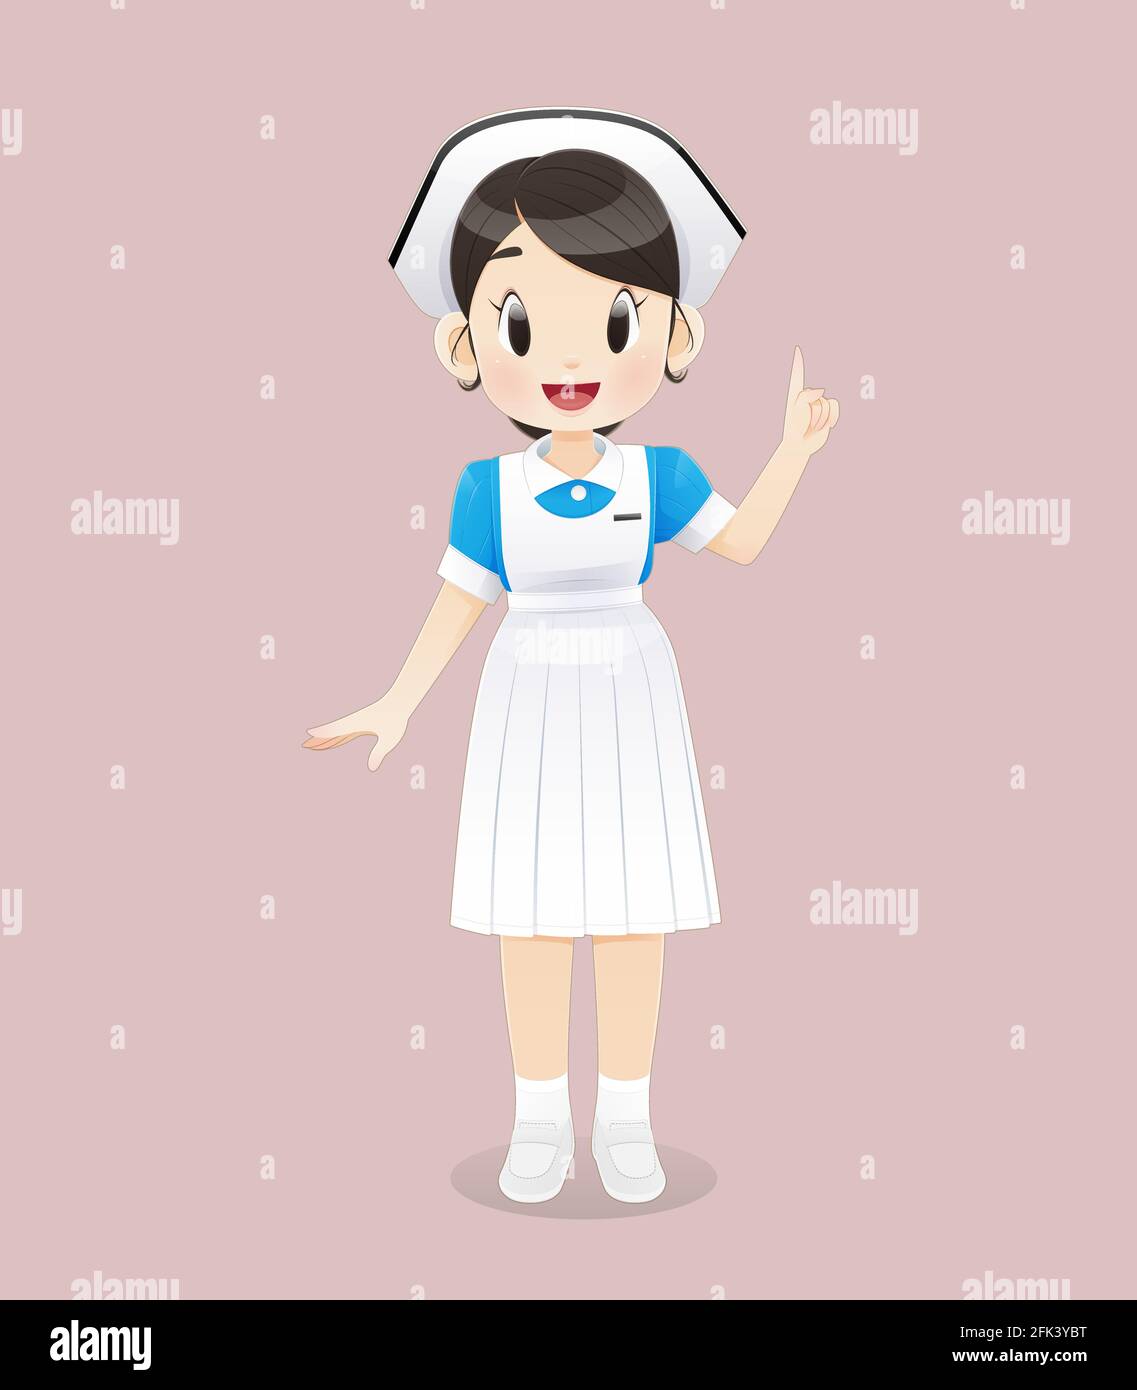 Étudiant en soins infirmiers portant un uniforme bleu et blanc se tient sur un fond rose. Personnel infirmier souriant. Illustration vectorielle dans le dessin animé caractère d Illustration de Vecteur